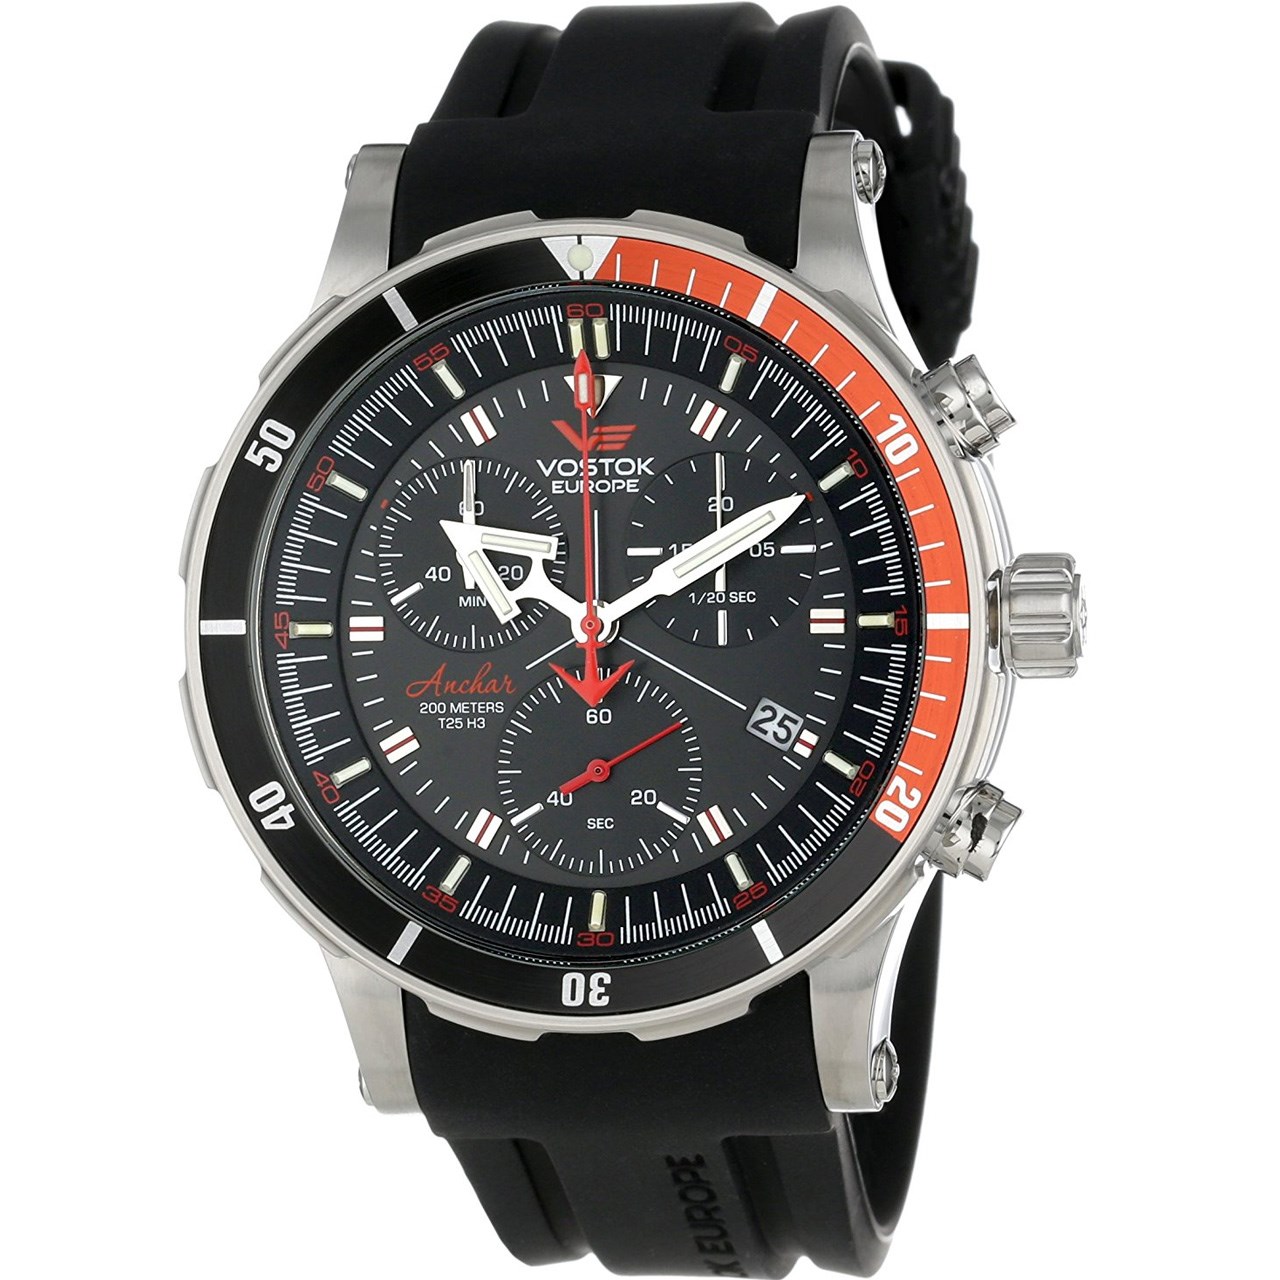 ساعت مچی عقربه ای مردانه وستوک یوروپ مدل 6S30-5105201 تولید محدود